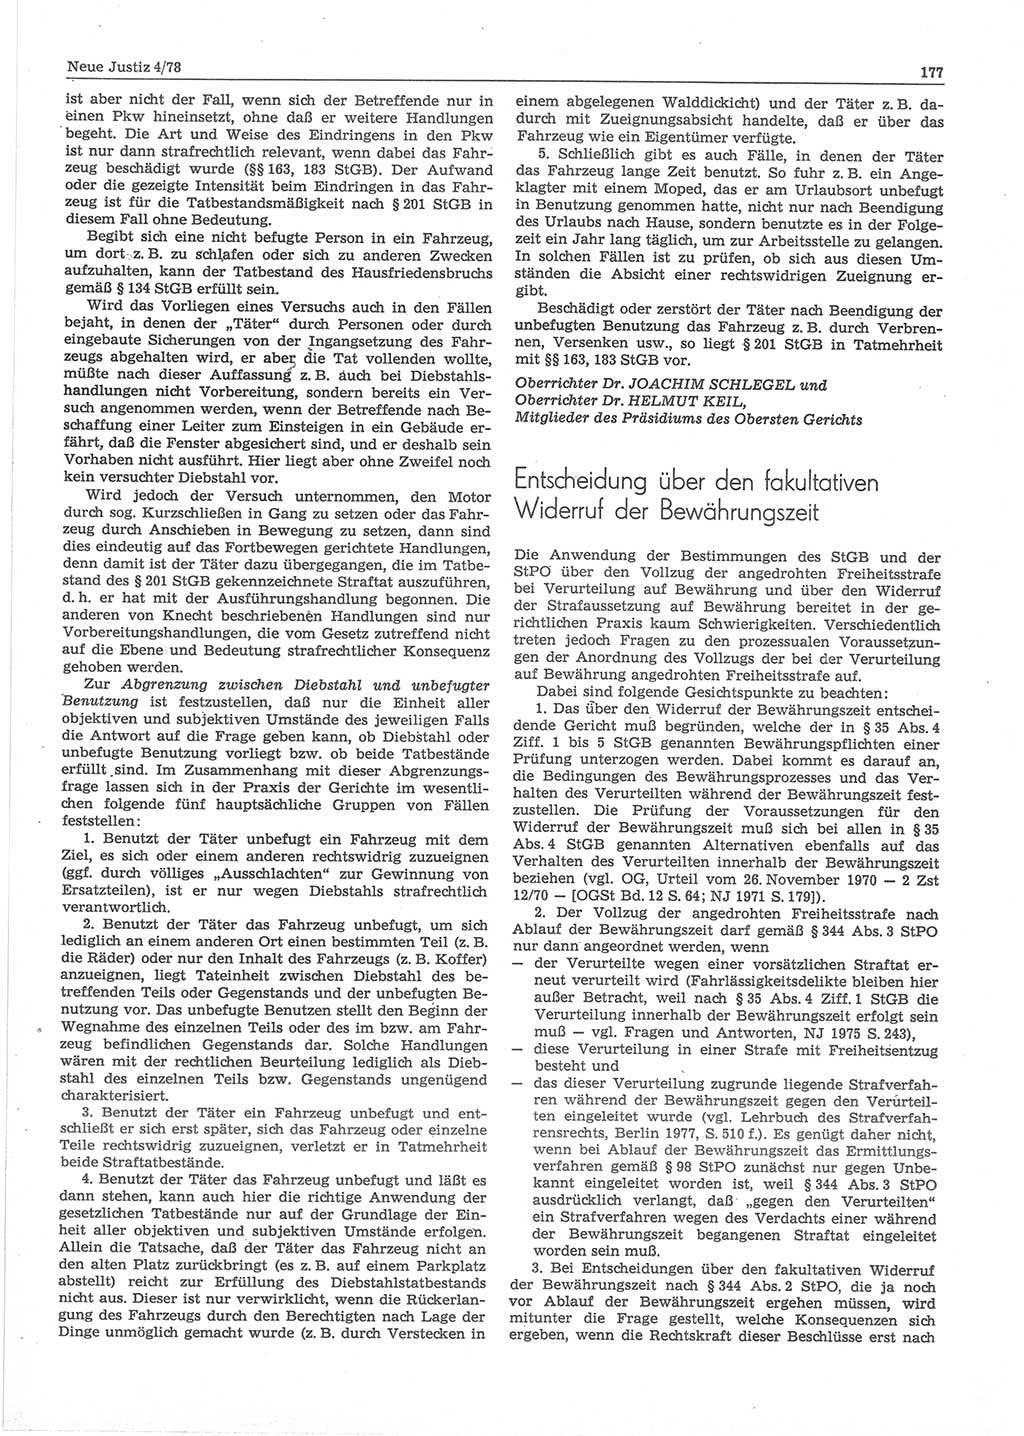 Neue Justiz (NJ), Zeitschrift für sozialistisches Recht und Gesetzlichkeit [Deutsche Demokratische Republik (DDR)], 32. Jahrgang 1978, Seite 177 (NJ DDR 1978, S. 177)